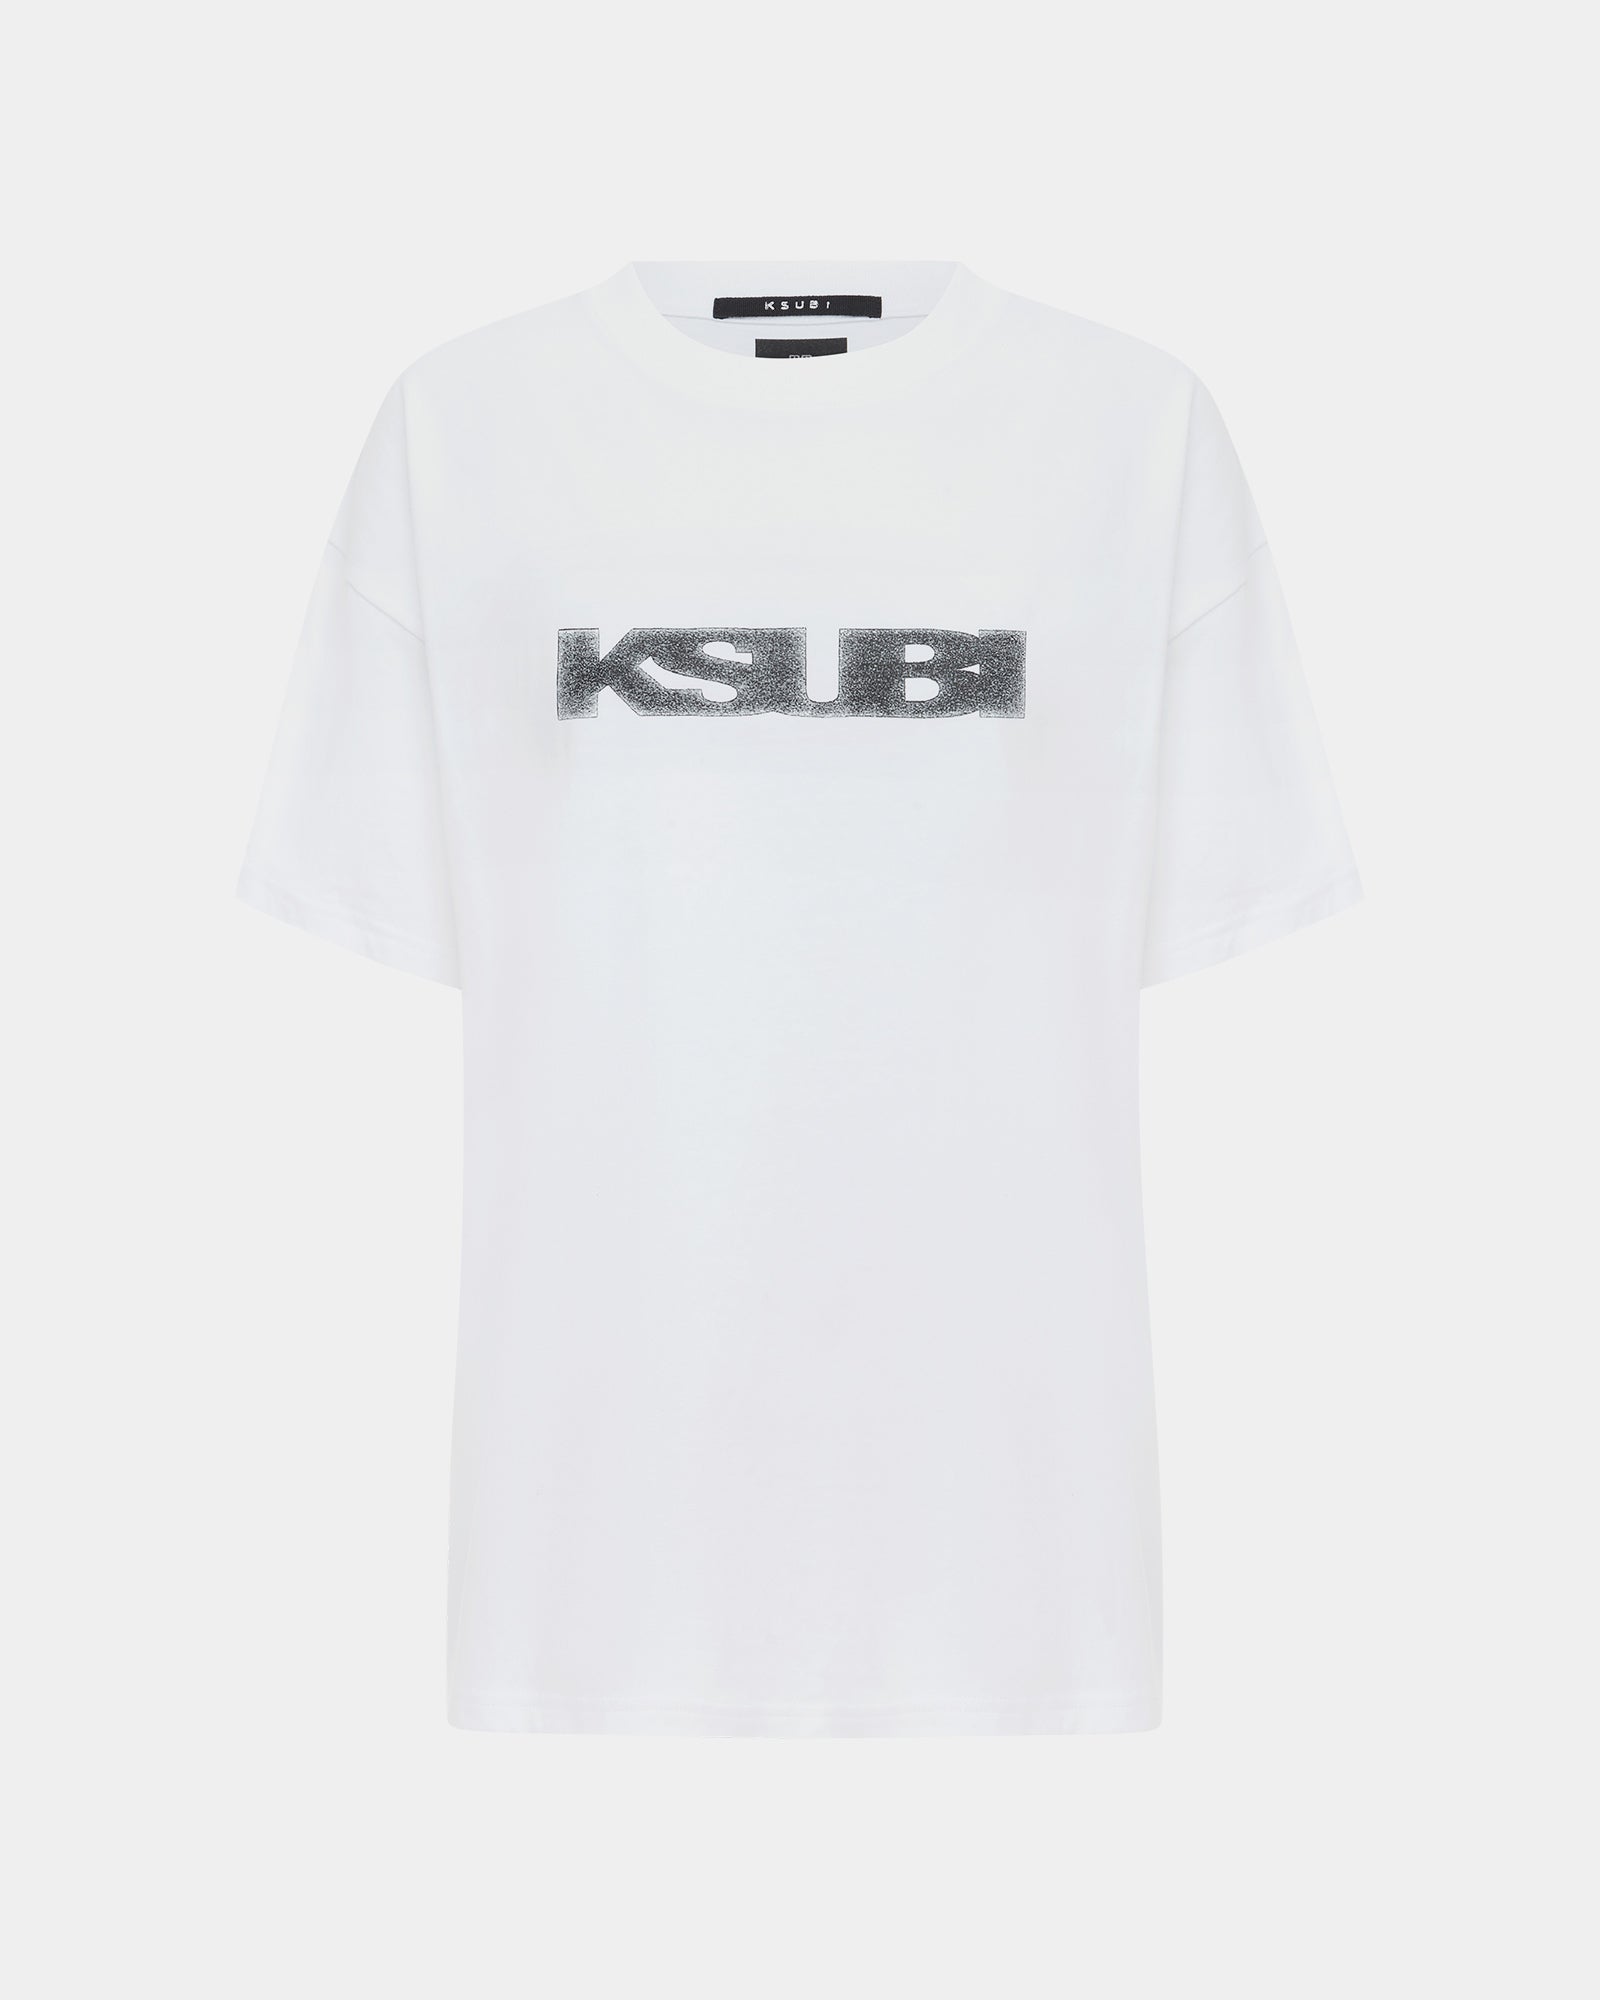 Sott Static Short Sleeve | T-shirt ++ White Ksubi - G Oh